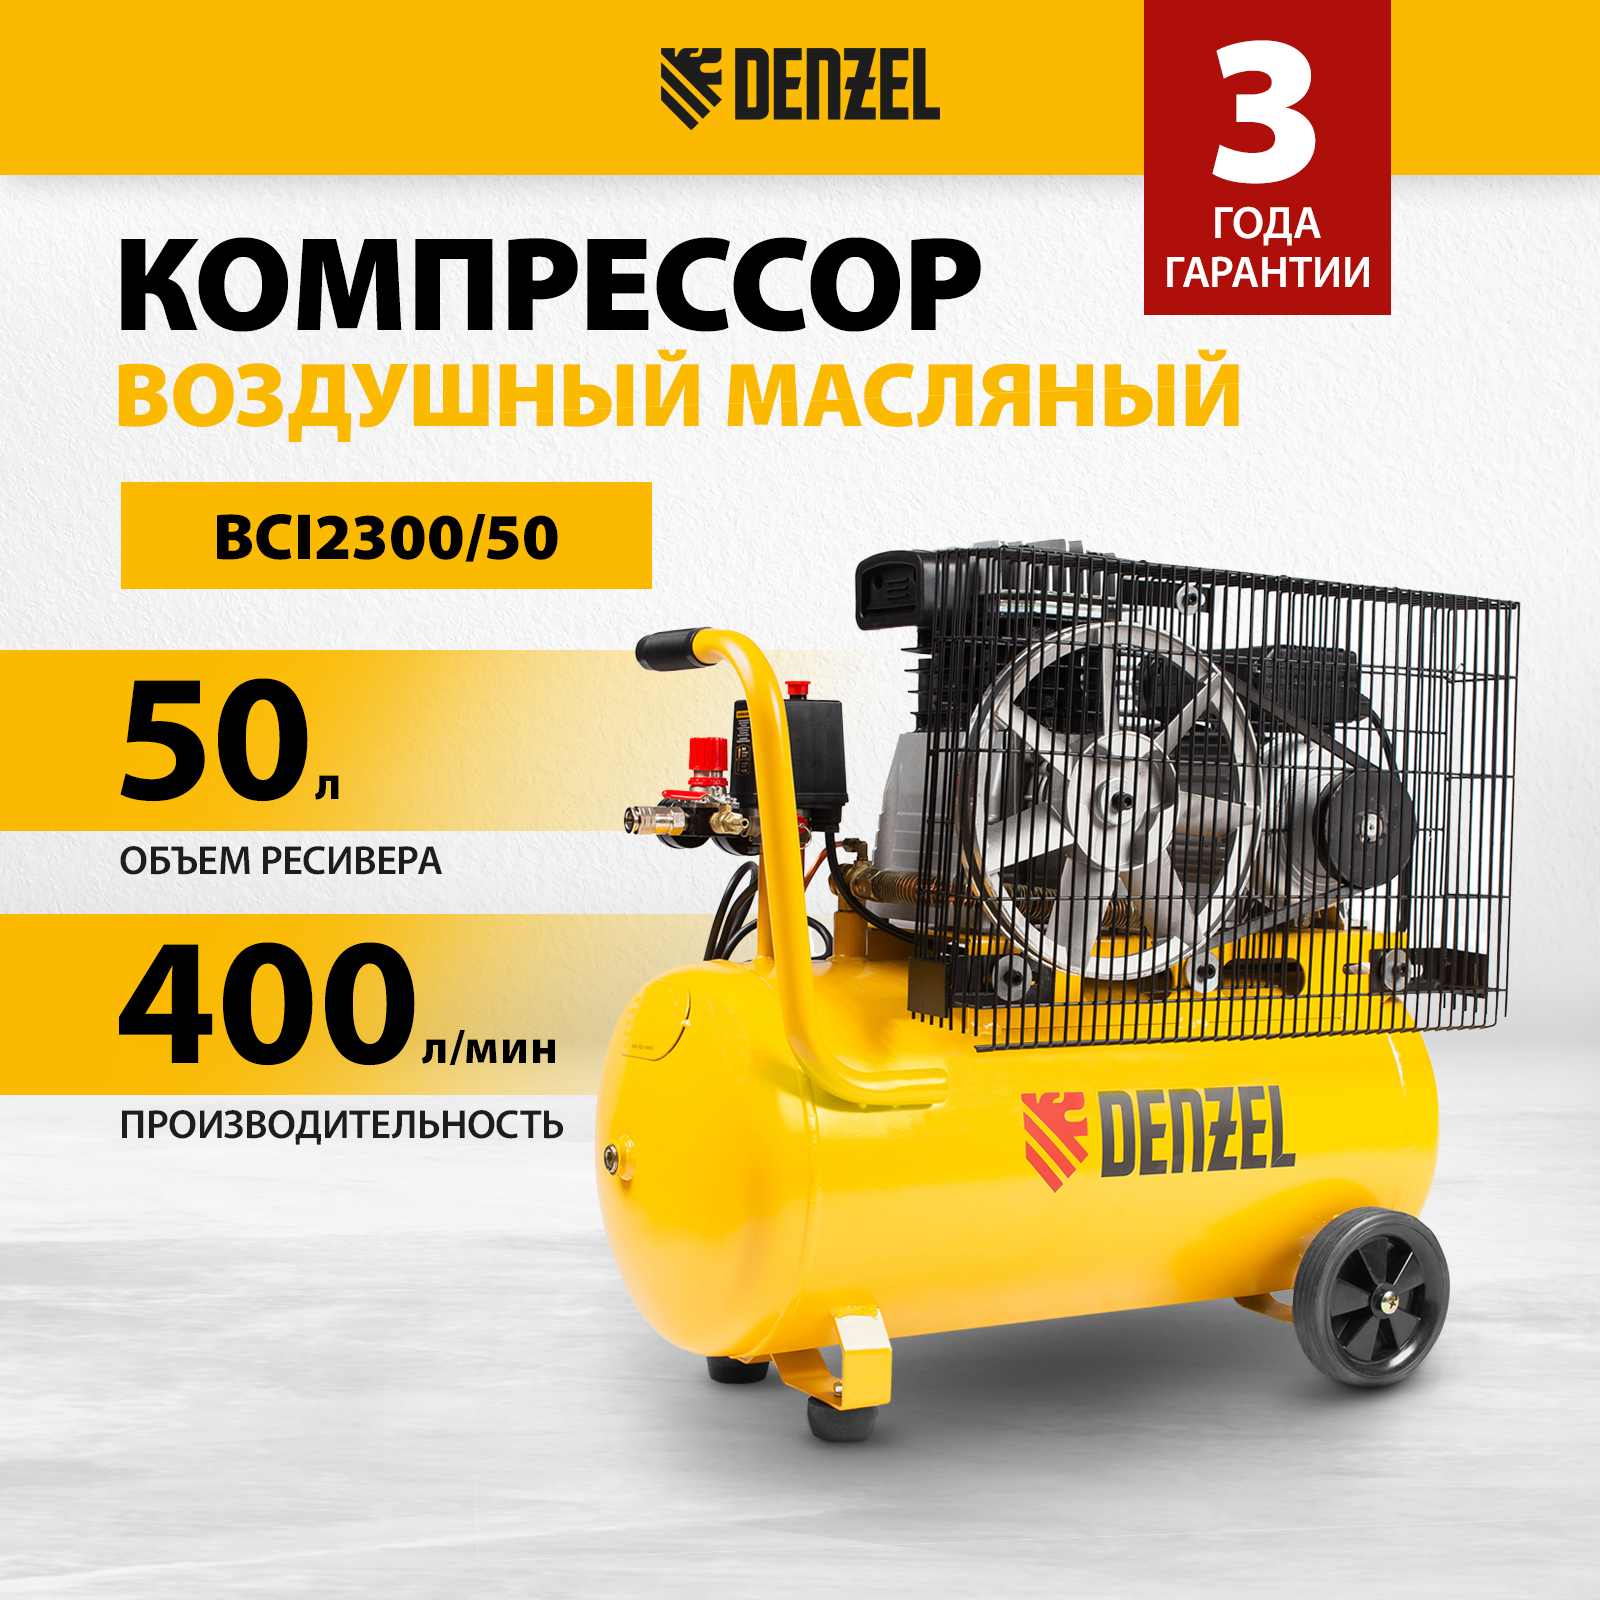 Компрессор воздушный DENZEL BCI2300/50 58113 компрессор воздушный denzel bci2300 100 58114